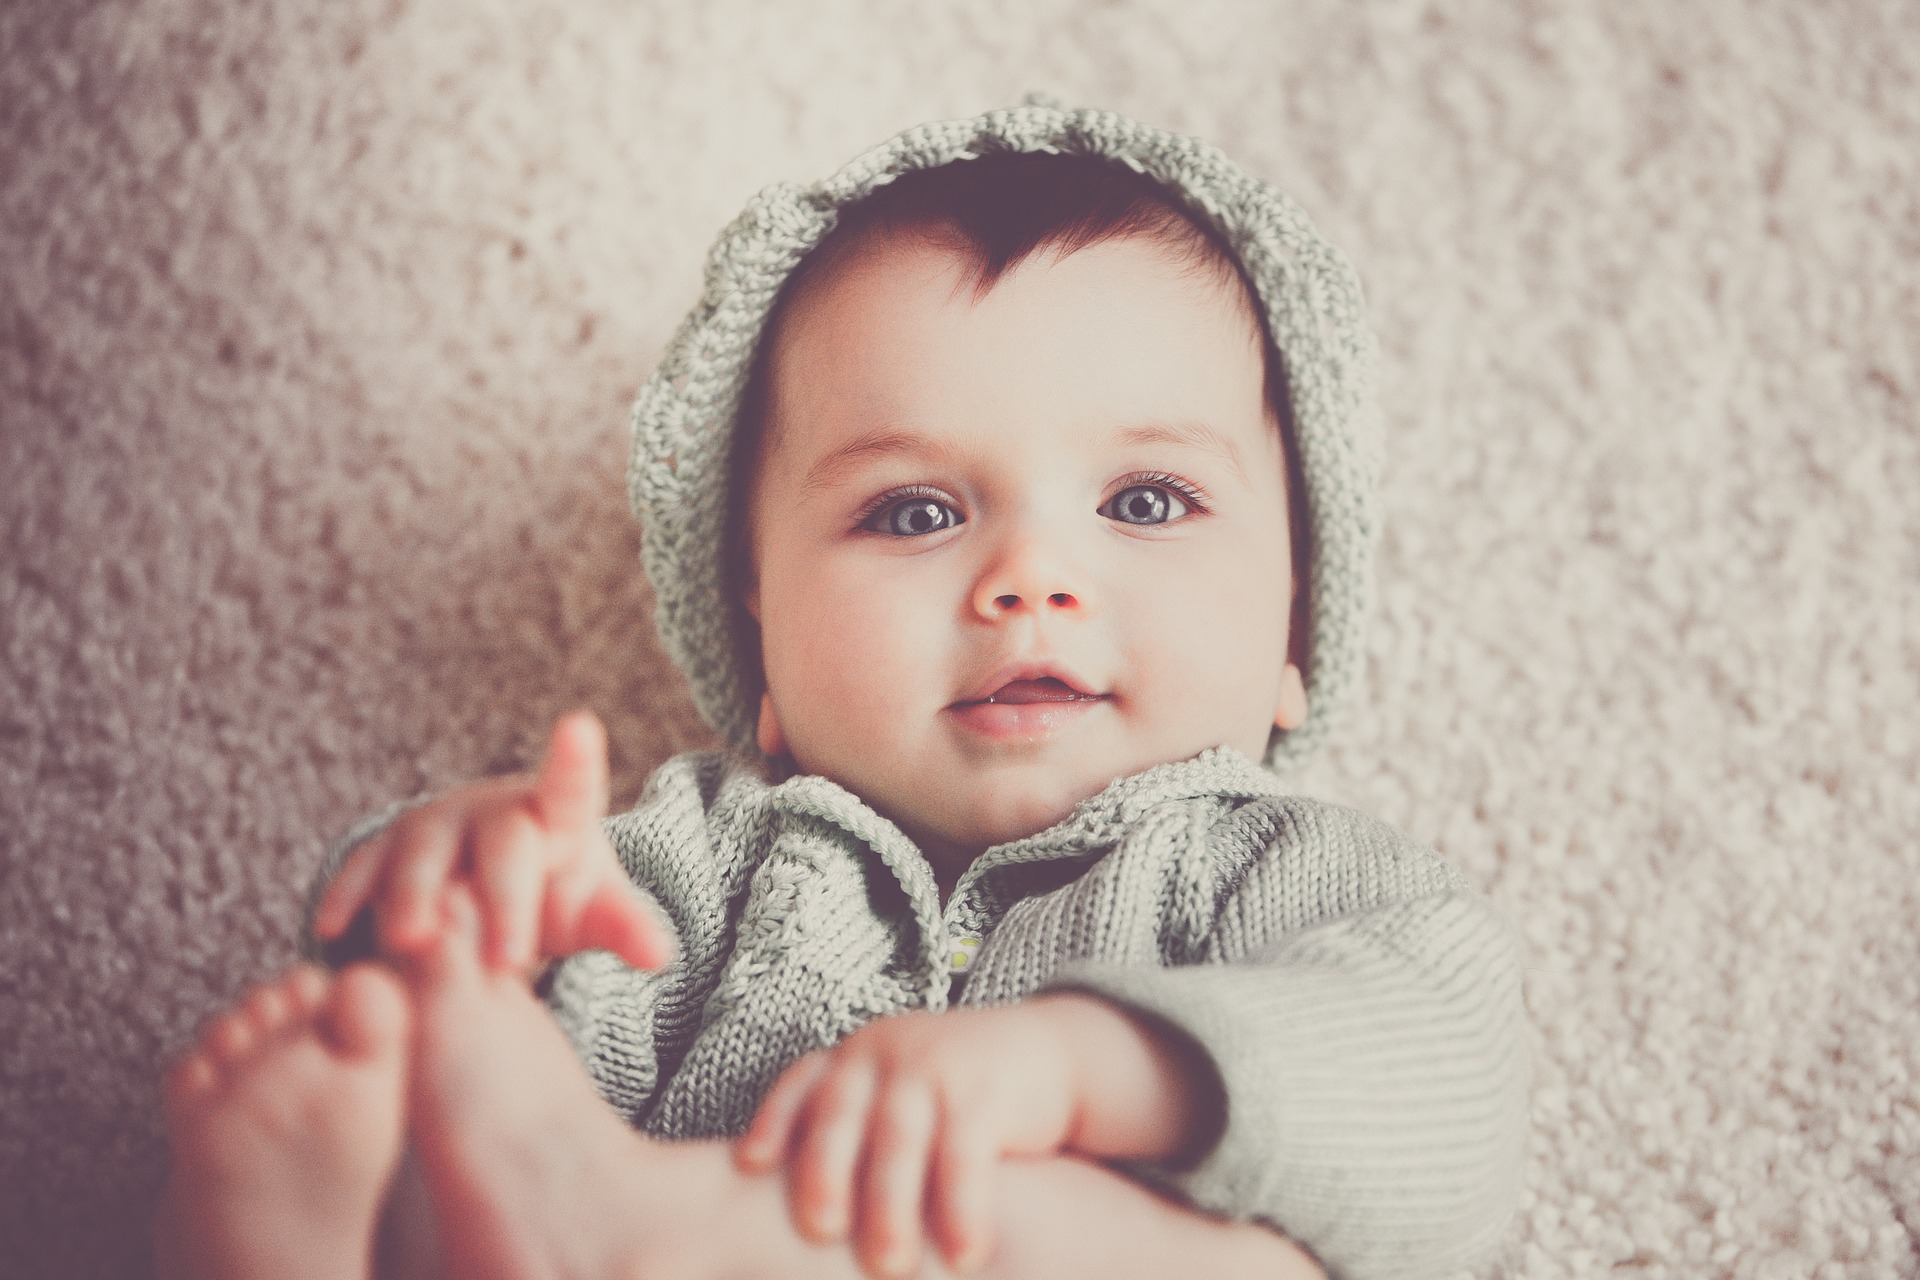 Uśmiechające się malutkie dziecko - zdjęcie ilustracyjne - Pixabay